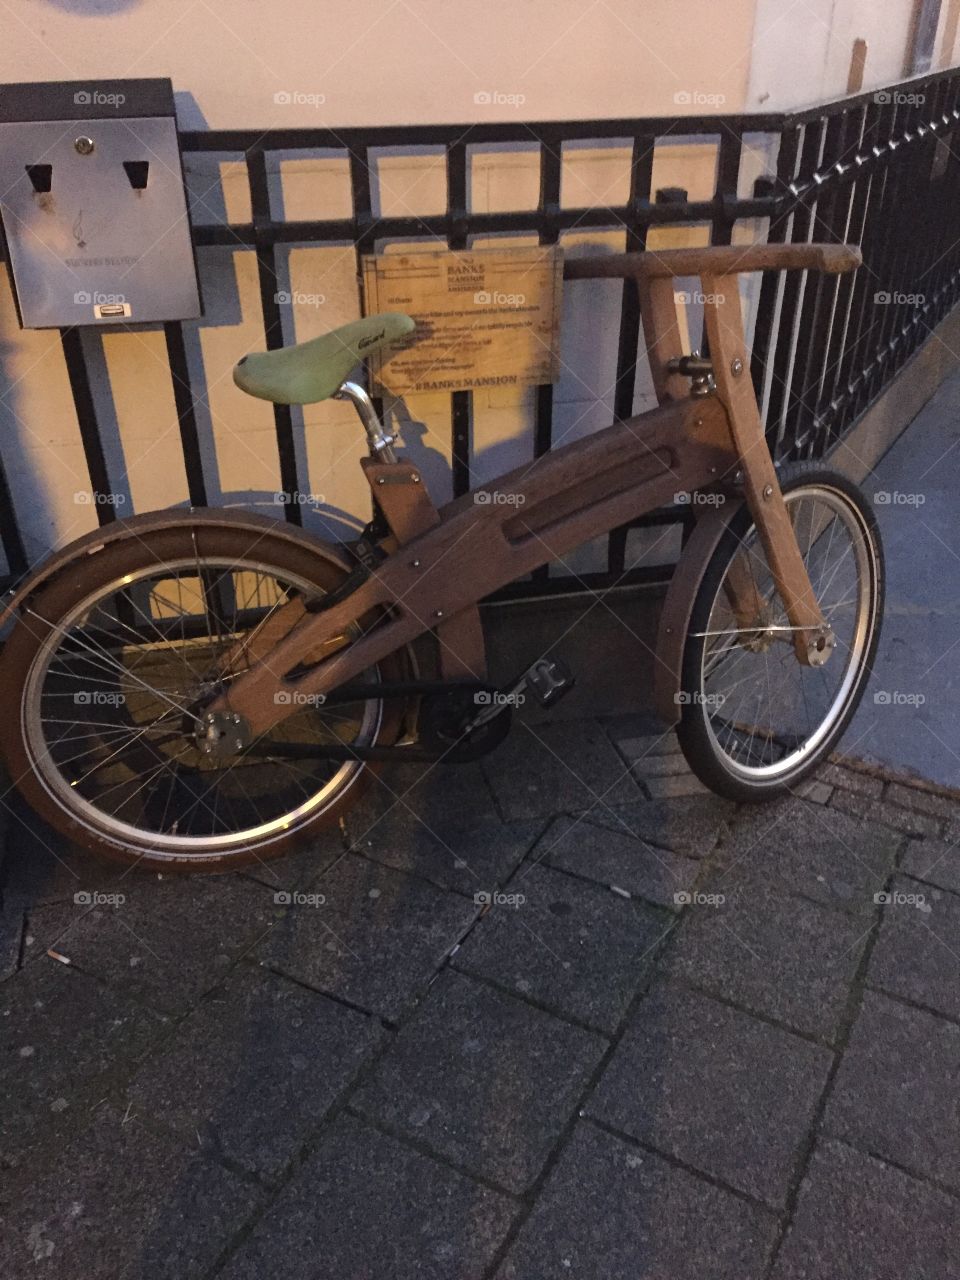 Wheel, No Person, Bike, Street, Pavement